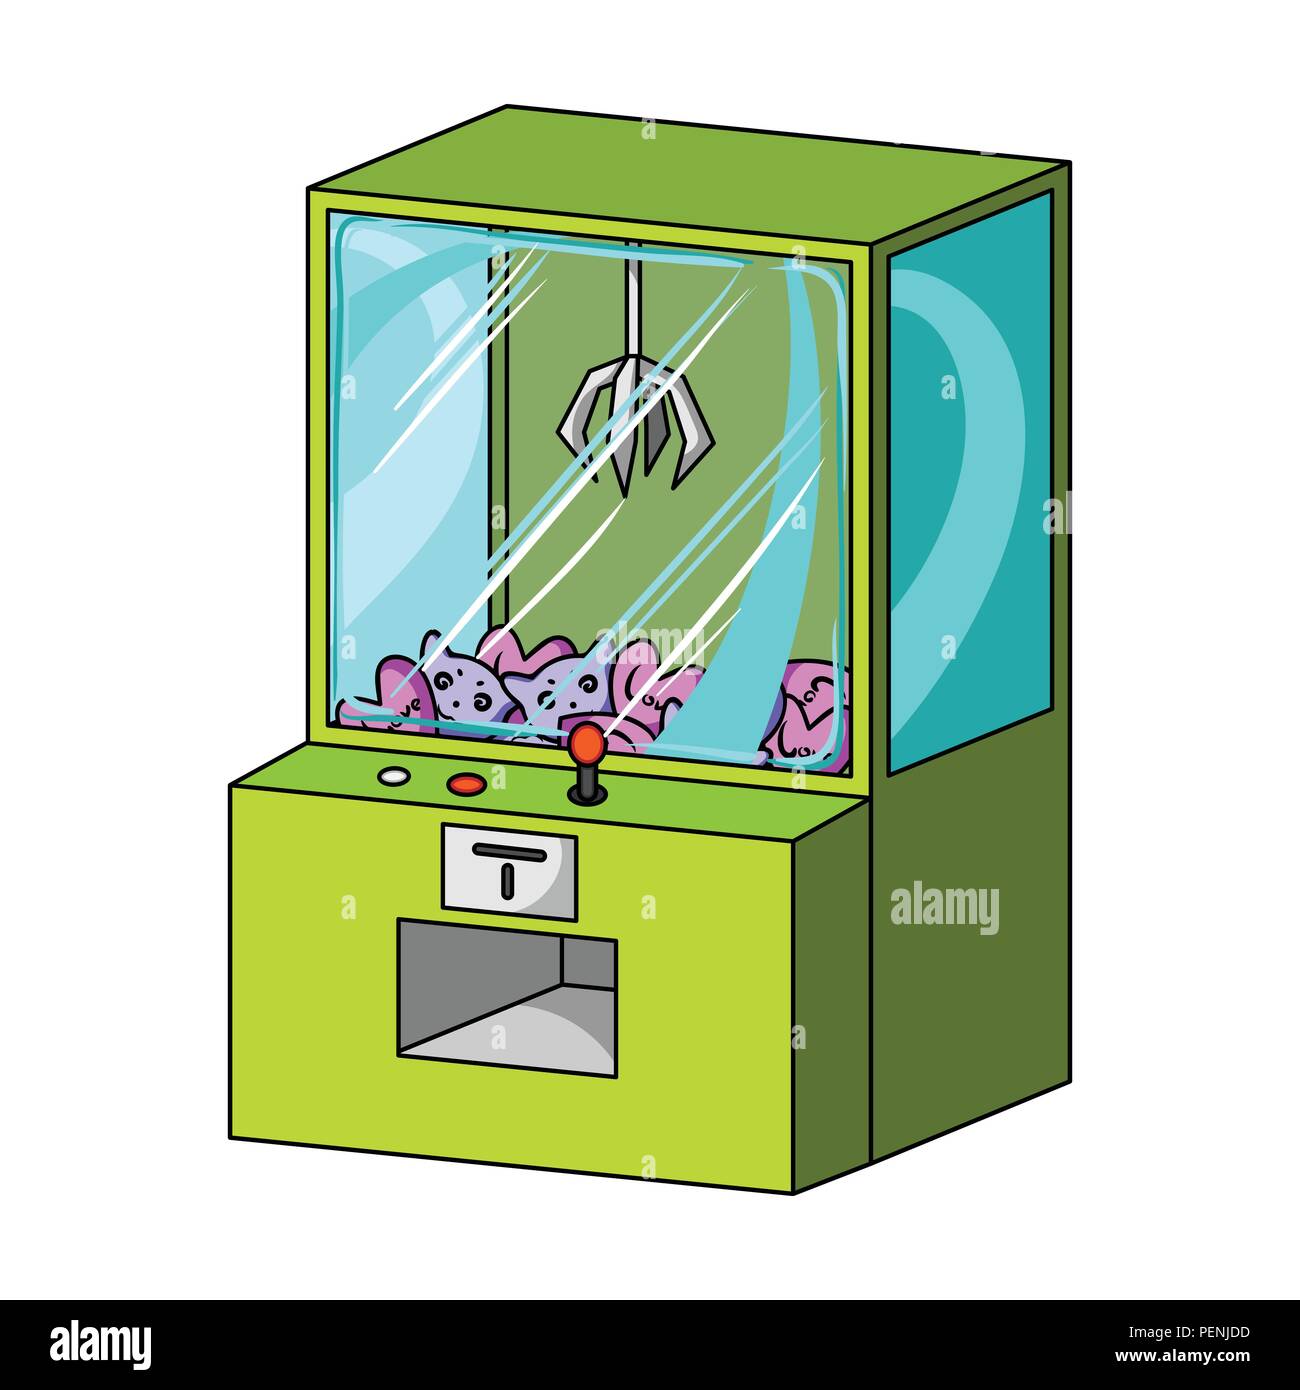 Terminale di gioco con giocattoli. Il terminale unica icona in stile cartoon isometrica simbolo vettore illustrazione stock . Illustrazione Vettoriale